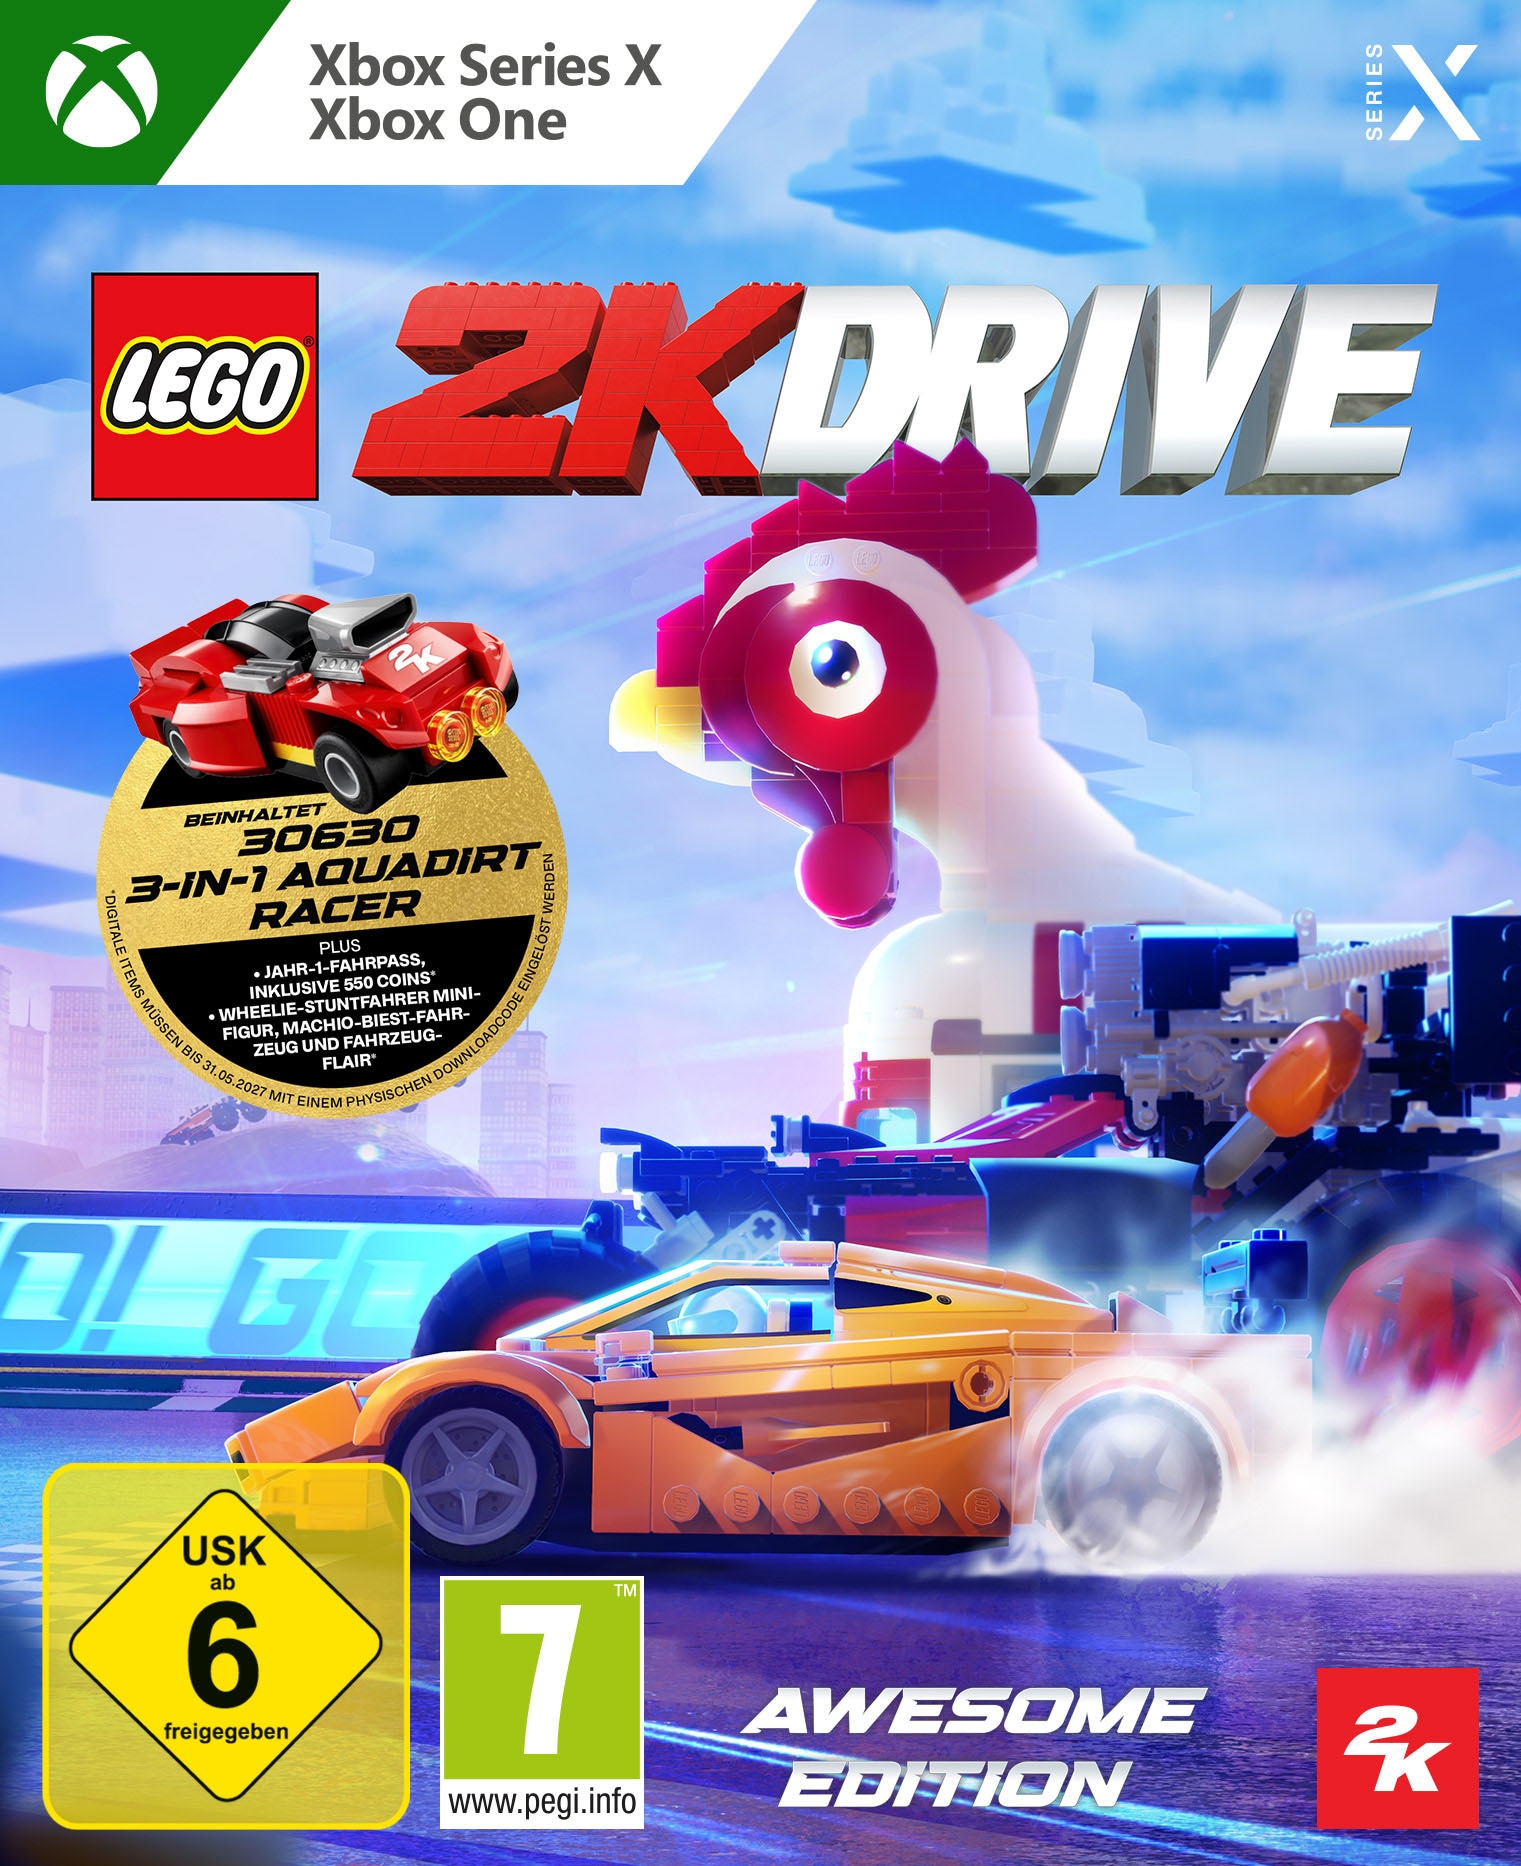 Take 2 Spielesoftware »Lego 2K Drive AWESOME«, Xbox Series X